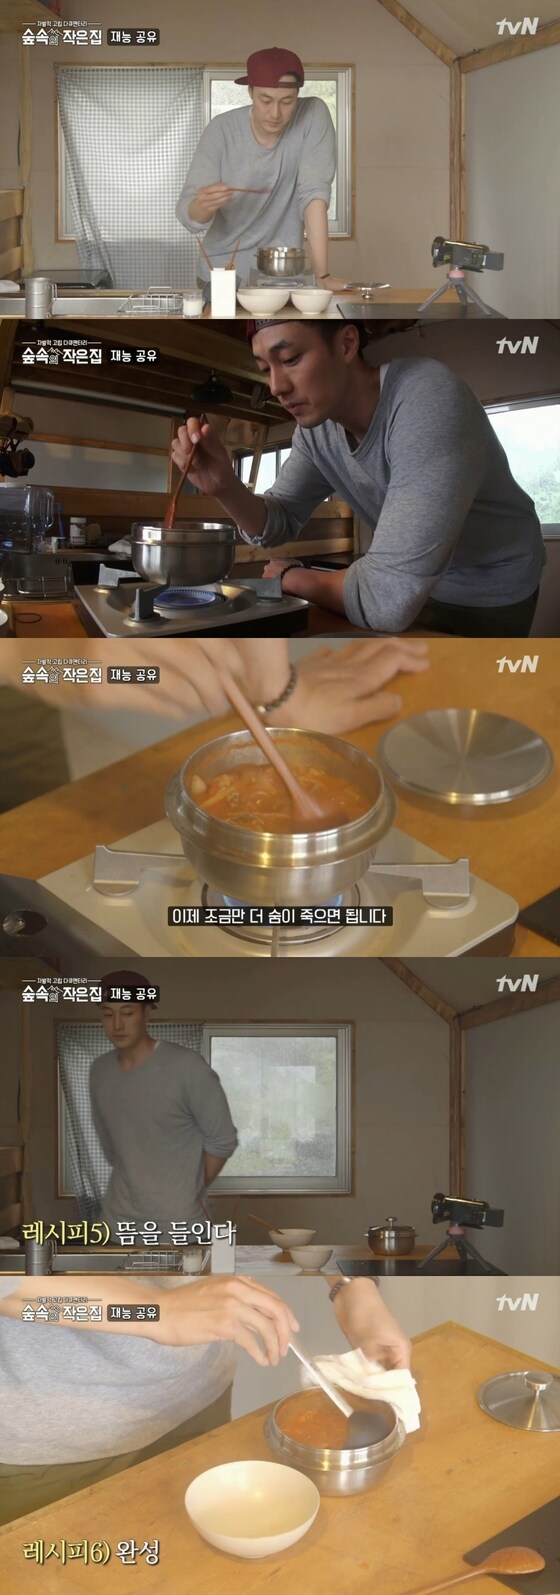 tvN '숲속의 작은집' 캡처© News1